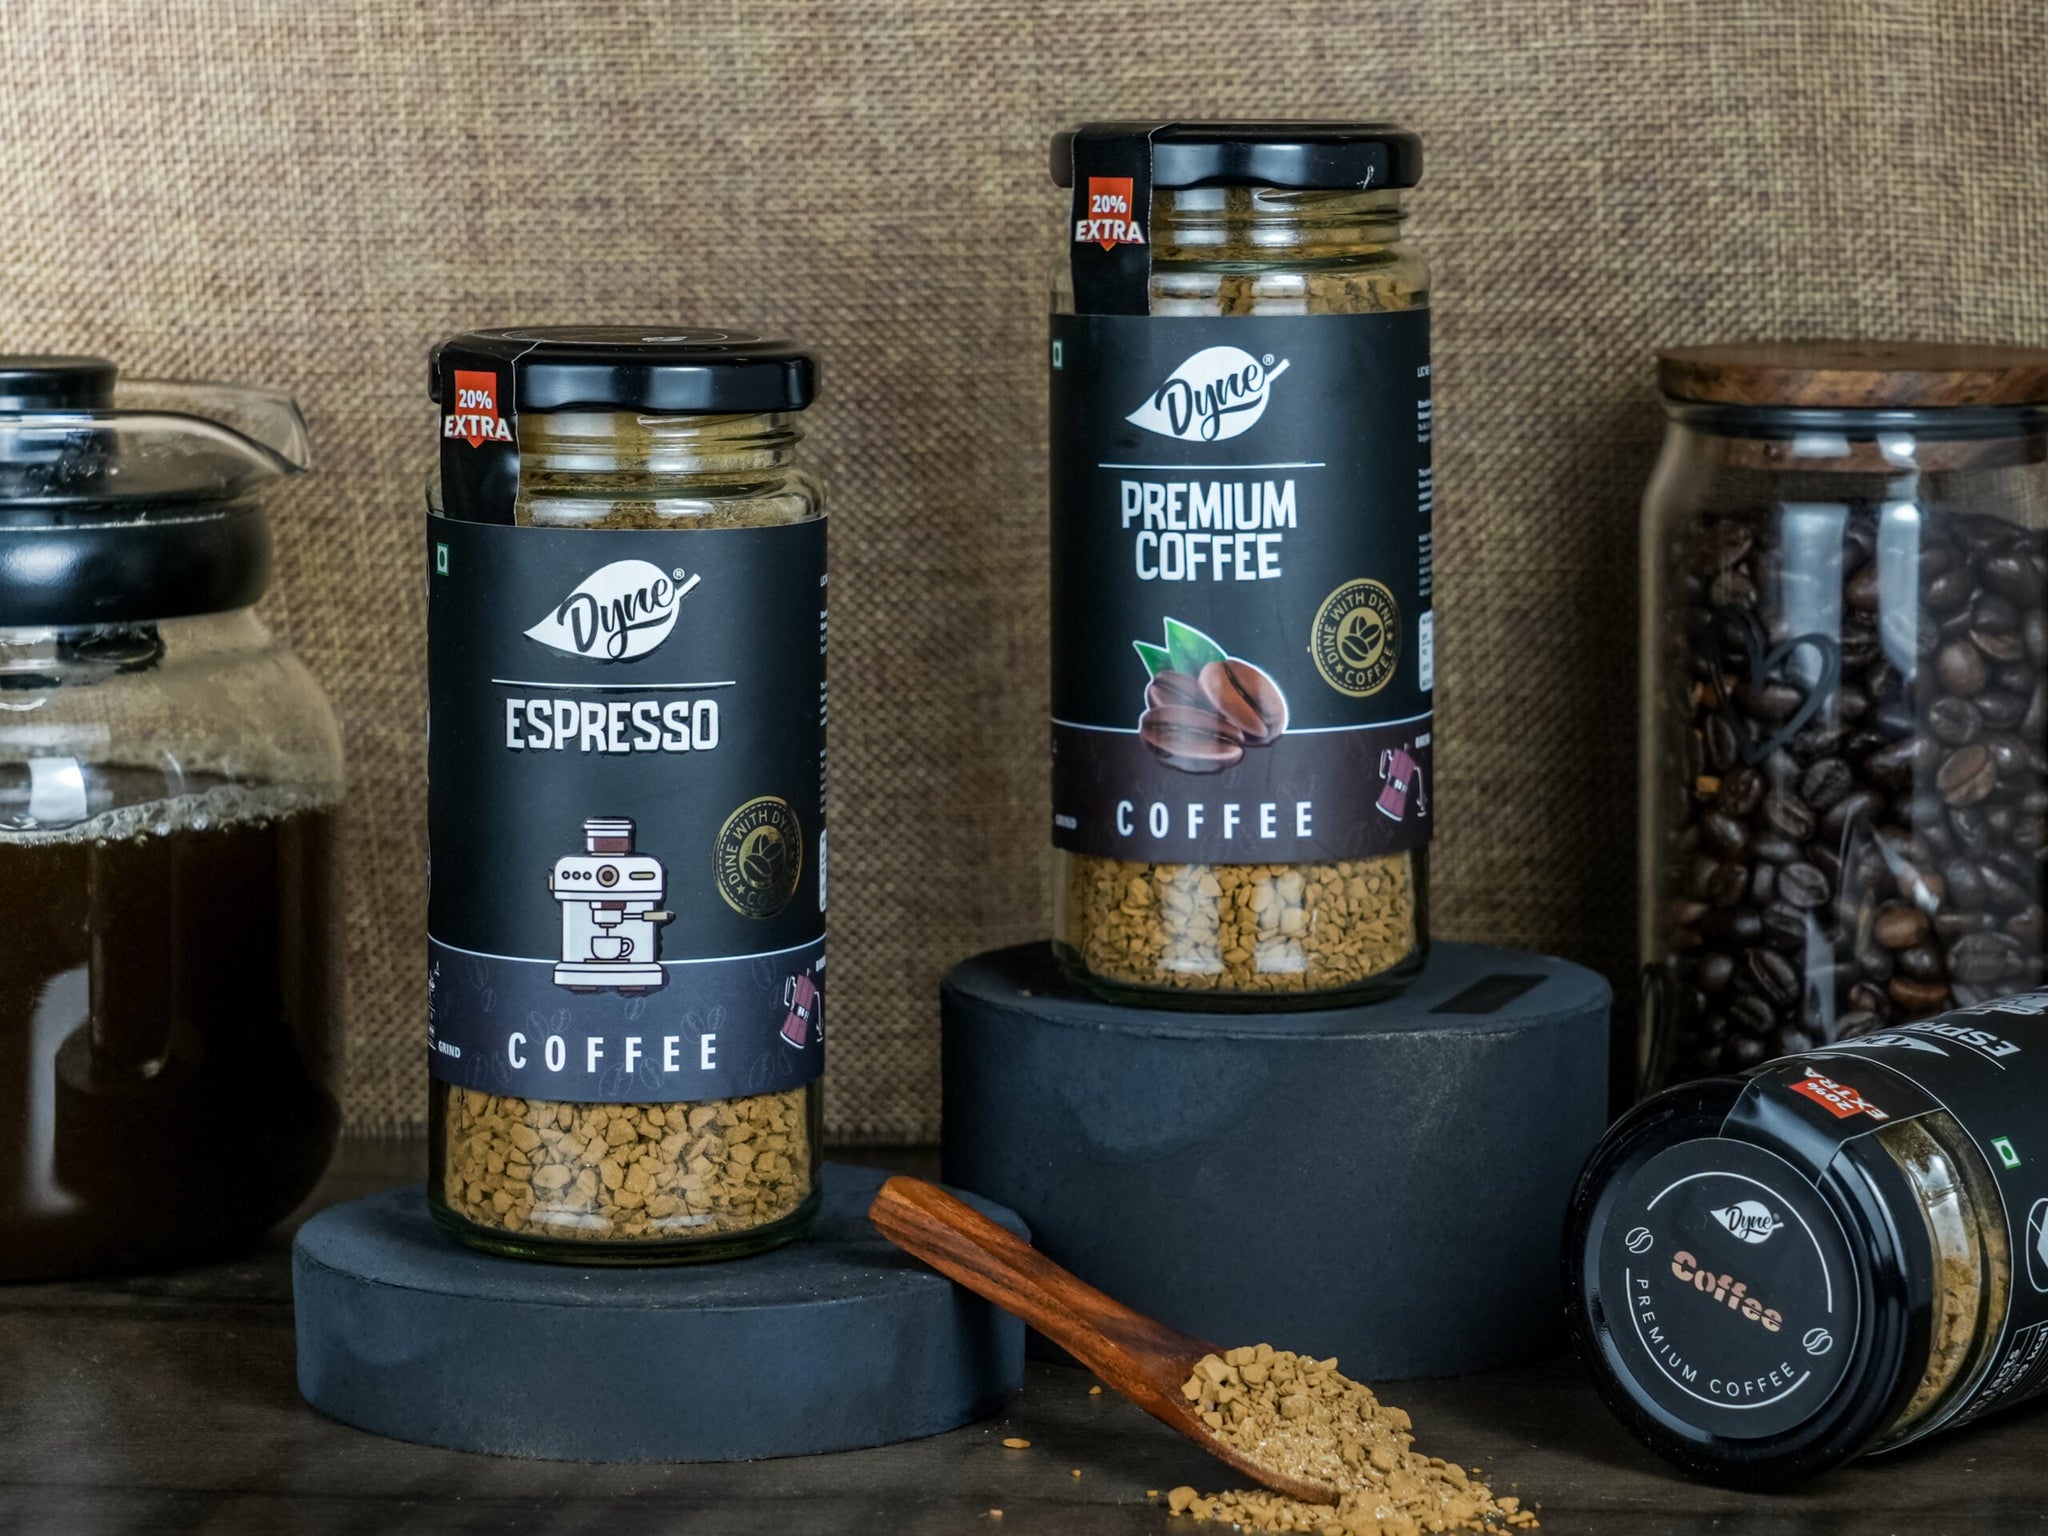 Espresso and Premium Coffee Combo